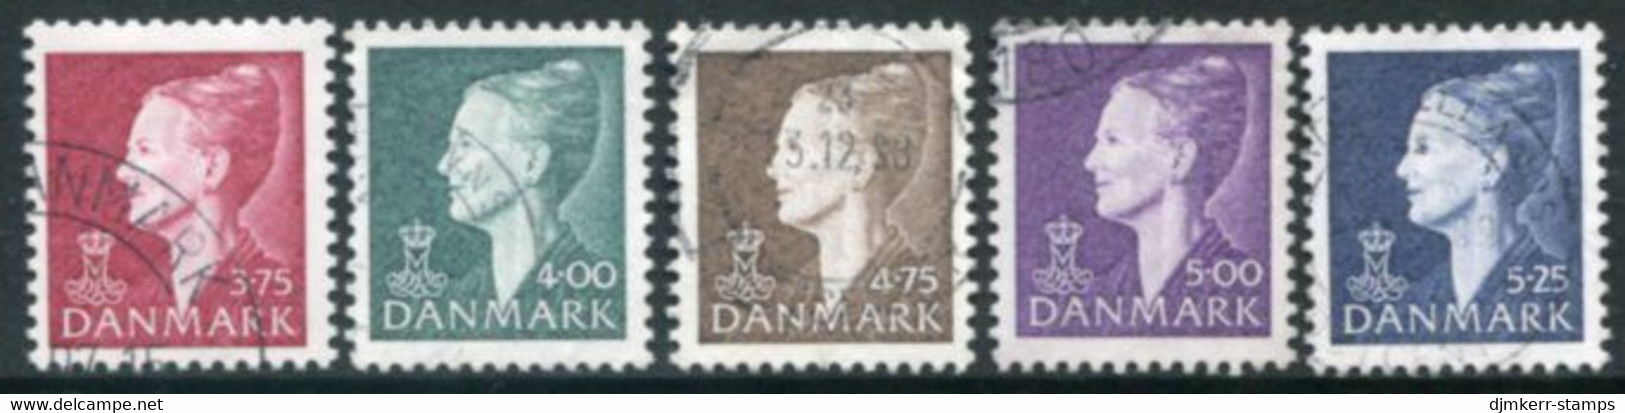 DENMARK 1997 Definitive: Queen Margarethe Used.  Michel 1141, 1158-61 - Usado